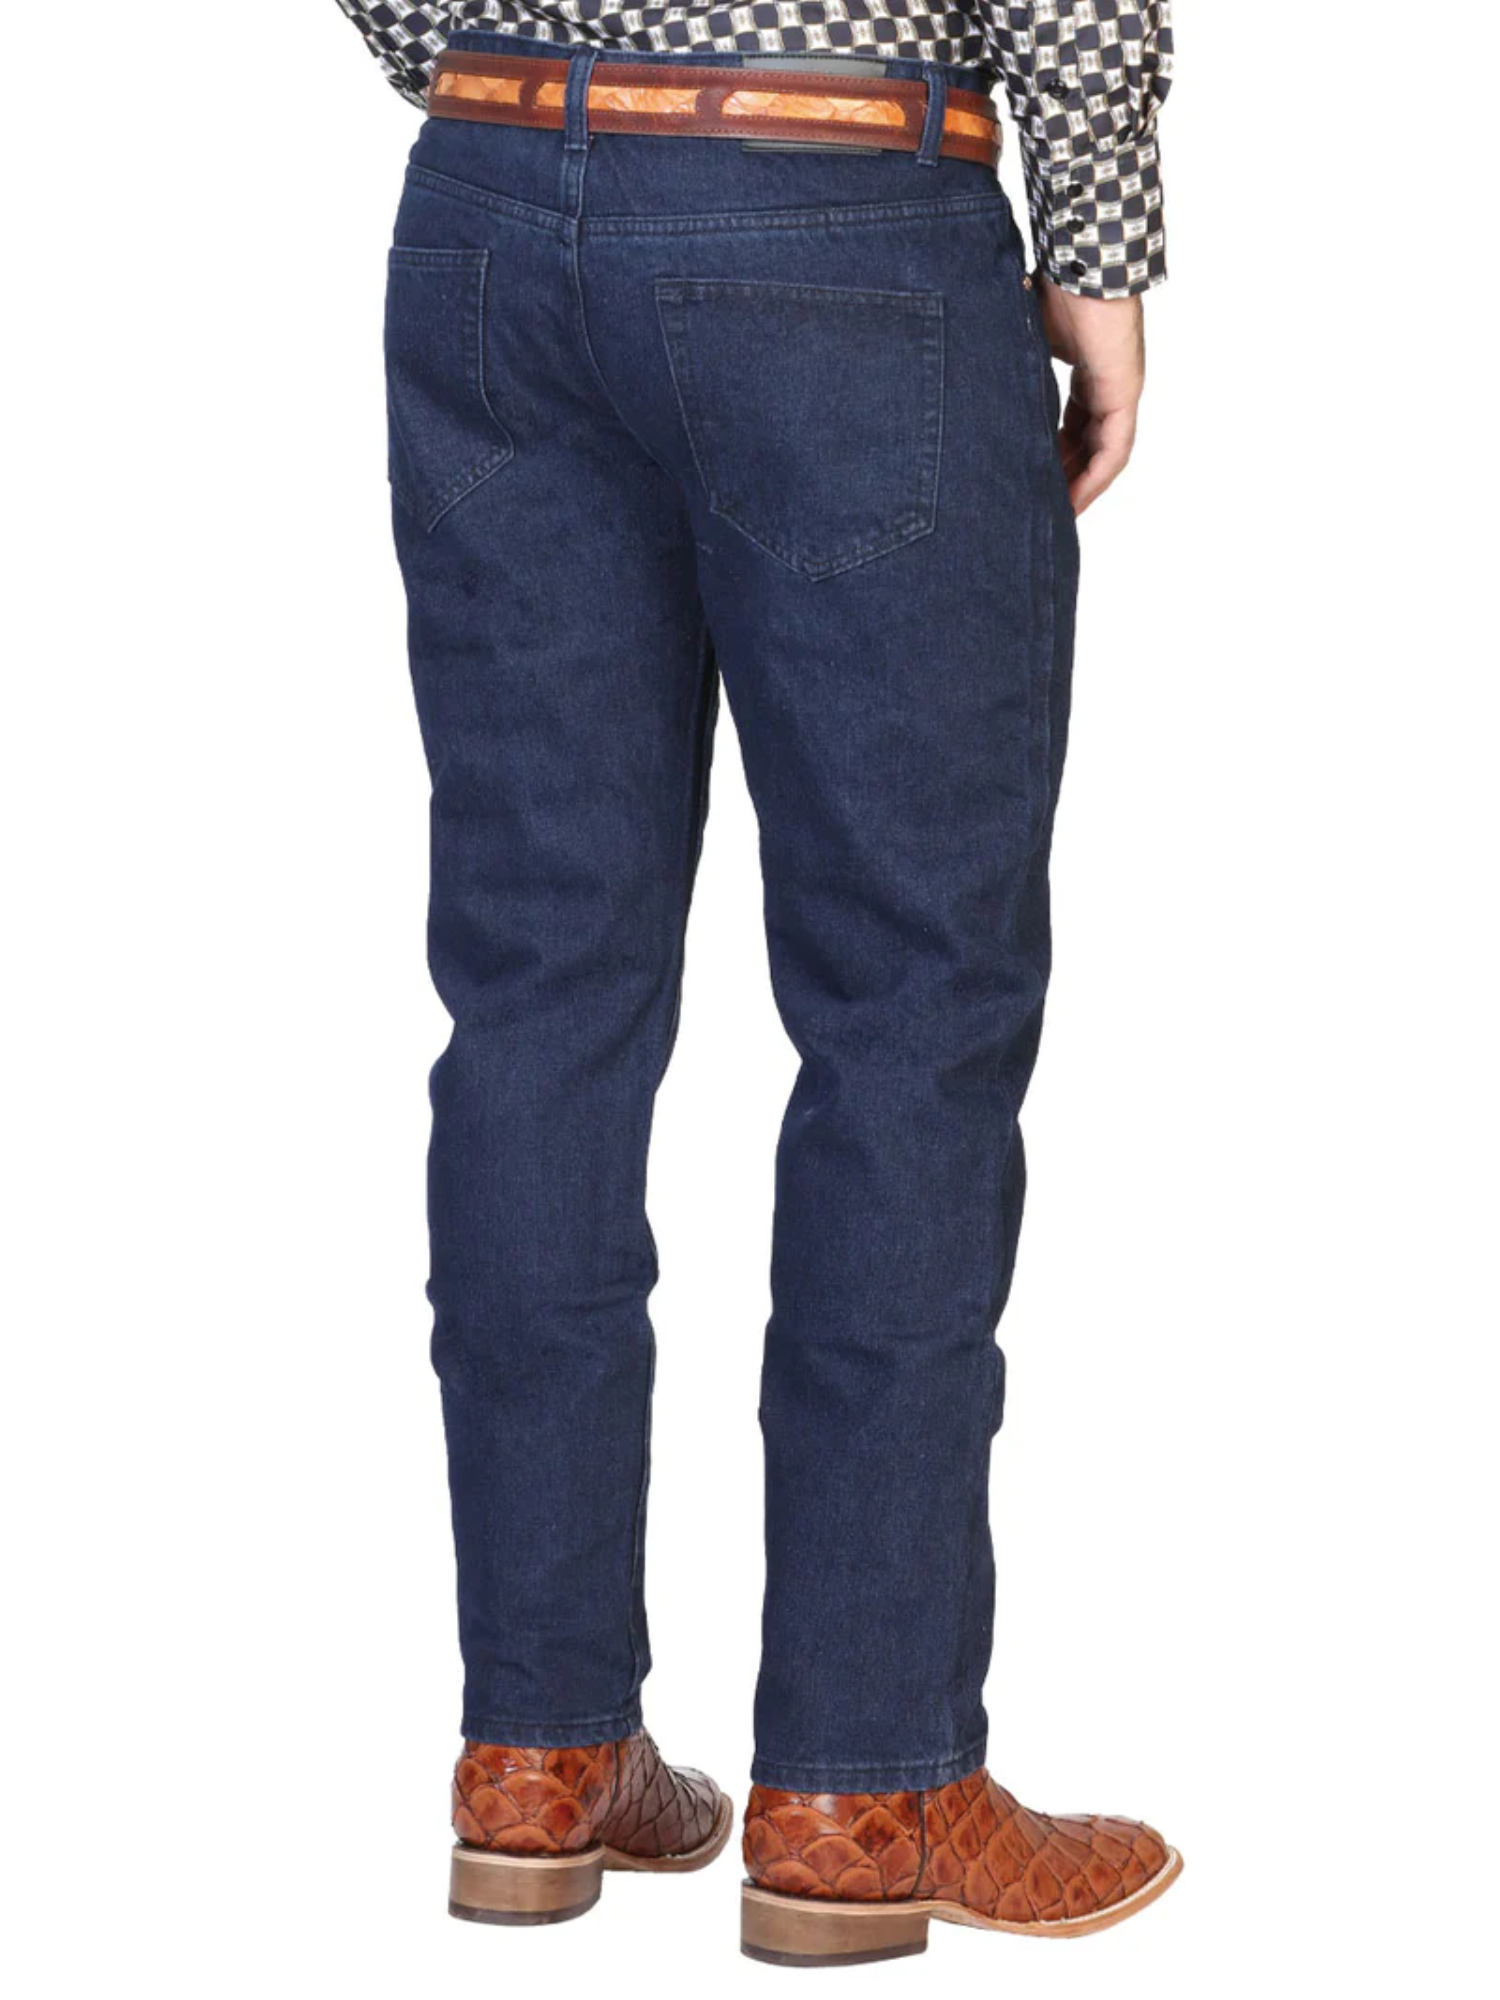 Pantalon de Mezclilla Casual Azul Oscuro para Hombre 'El General' - ID: 41330 Denim Jeans El General 